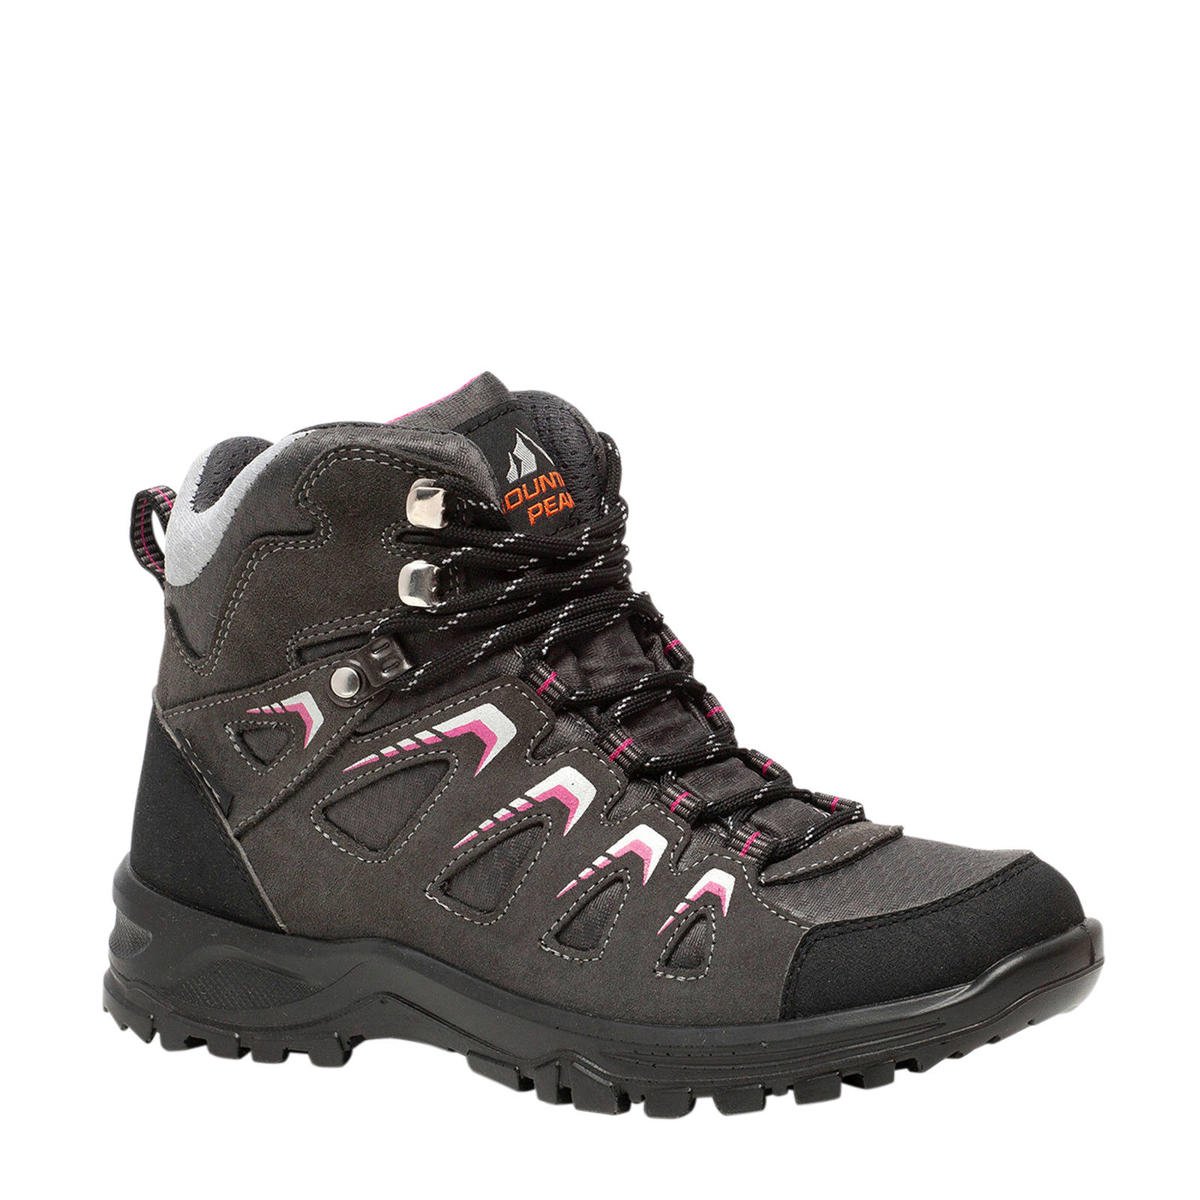 ontploffing Verstrooien Voorkomen Scapino Mountain Peak leren wandelschoenen roze/grijs | wehkamp